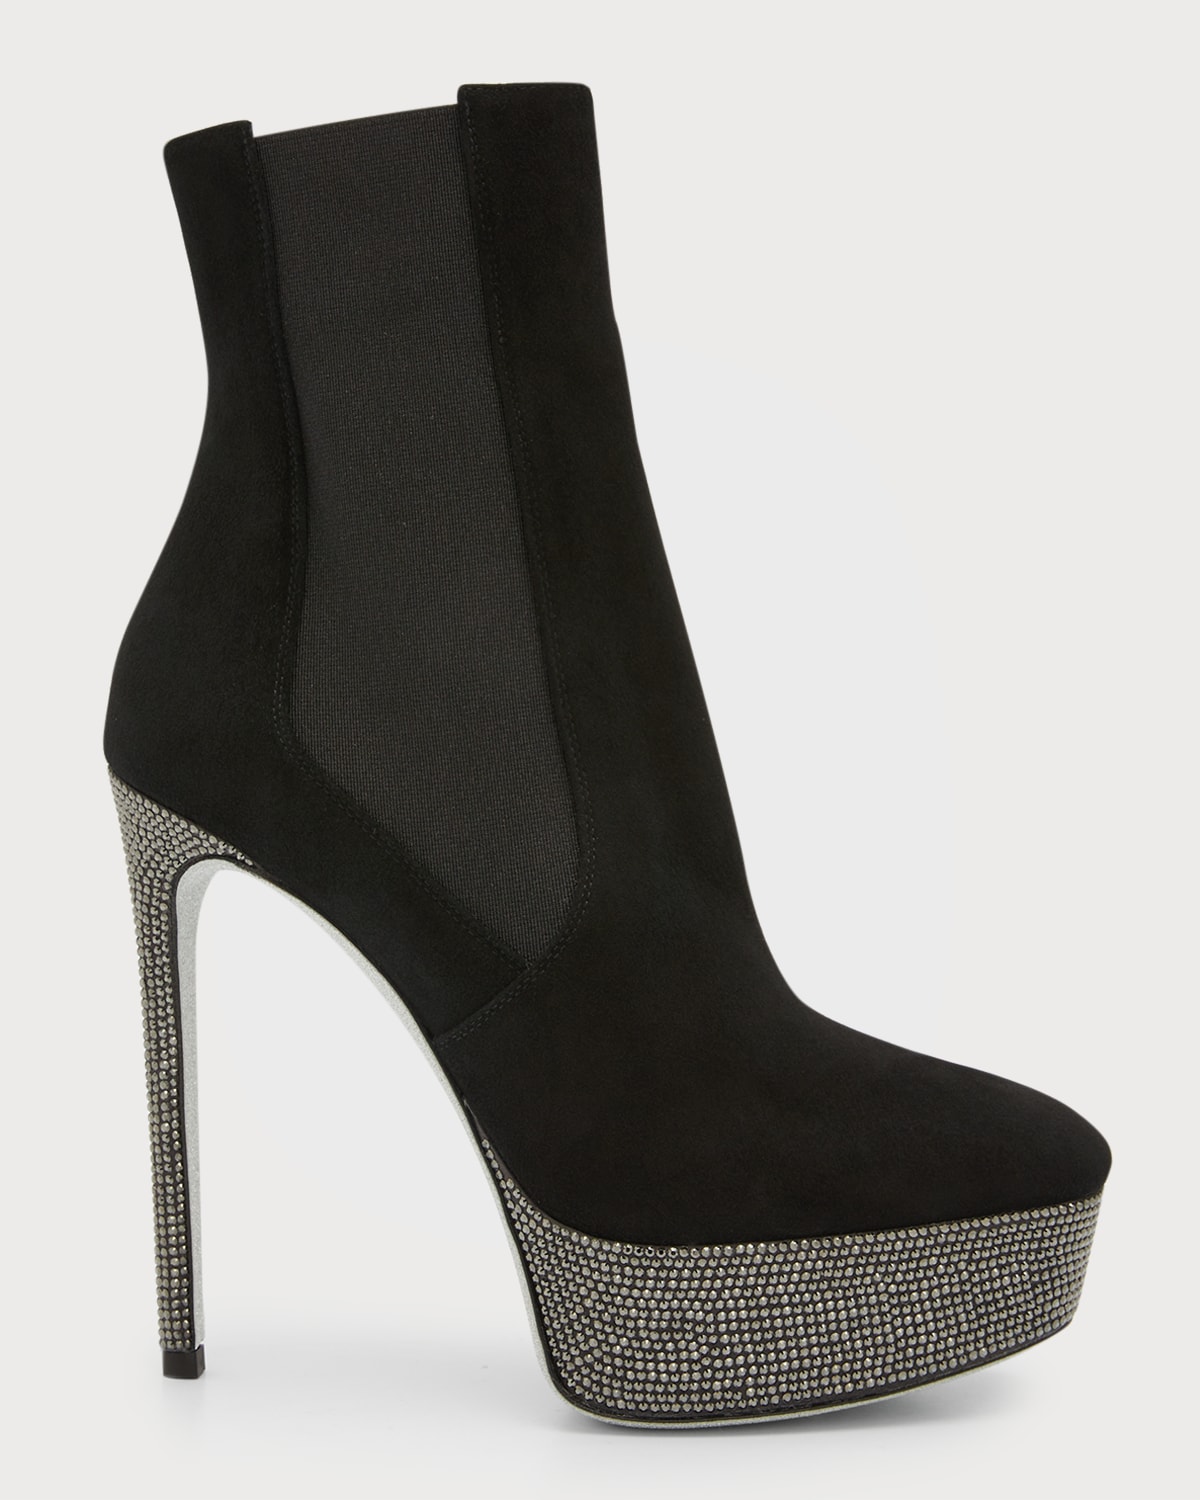 René Caovilla Embellished Platform Ankle Boots In Black/dark Grey